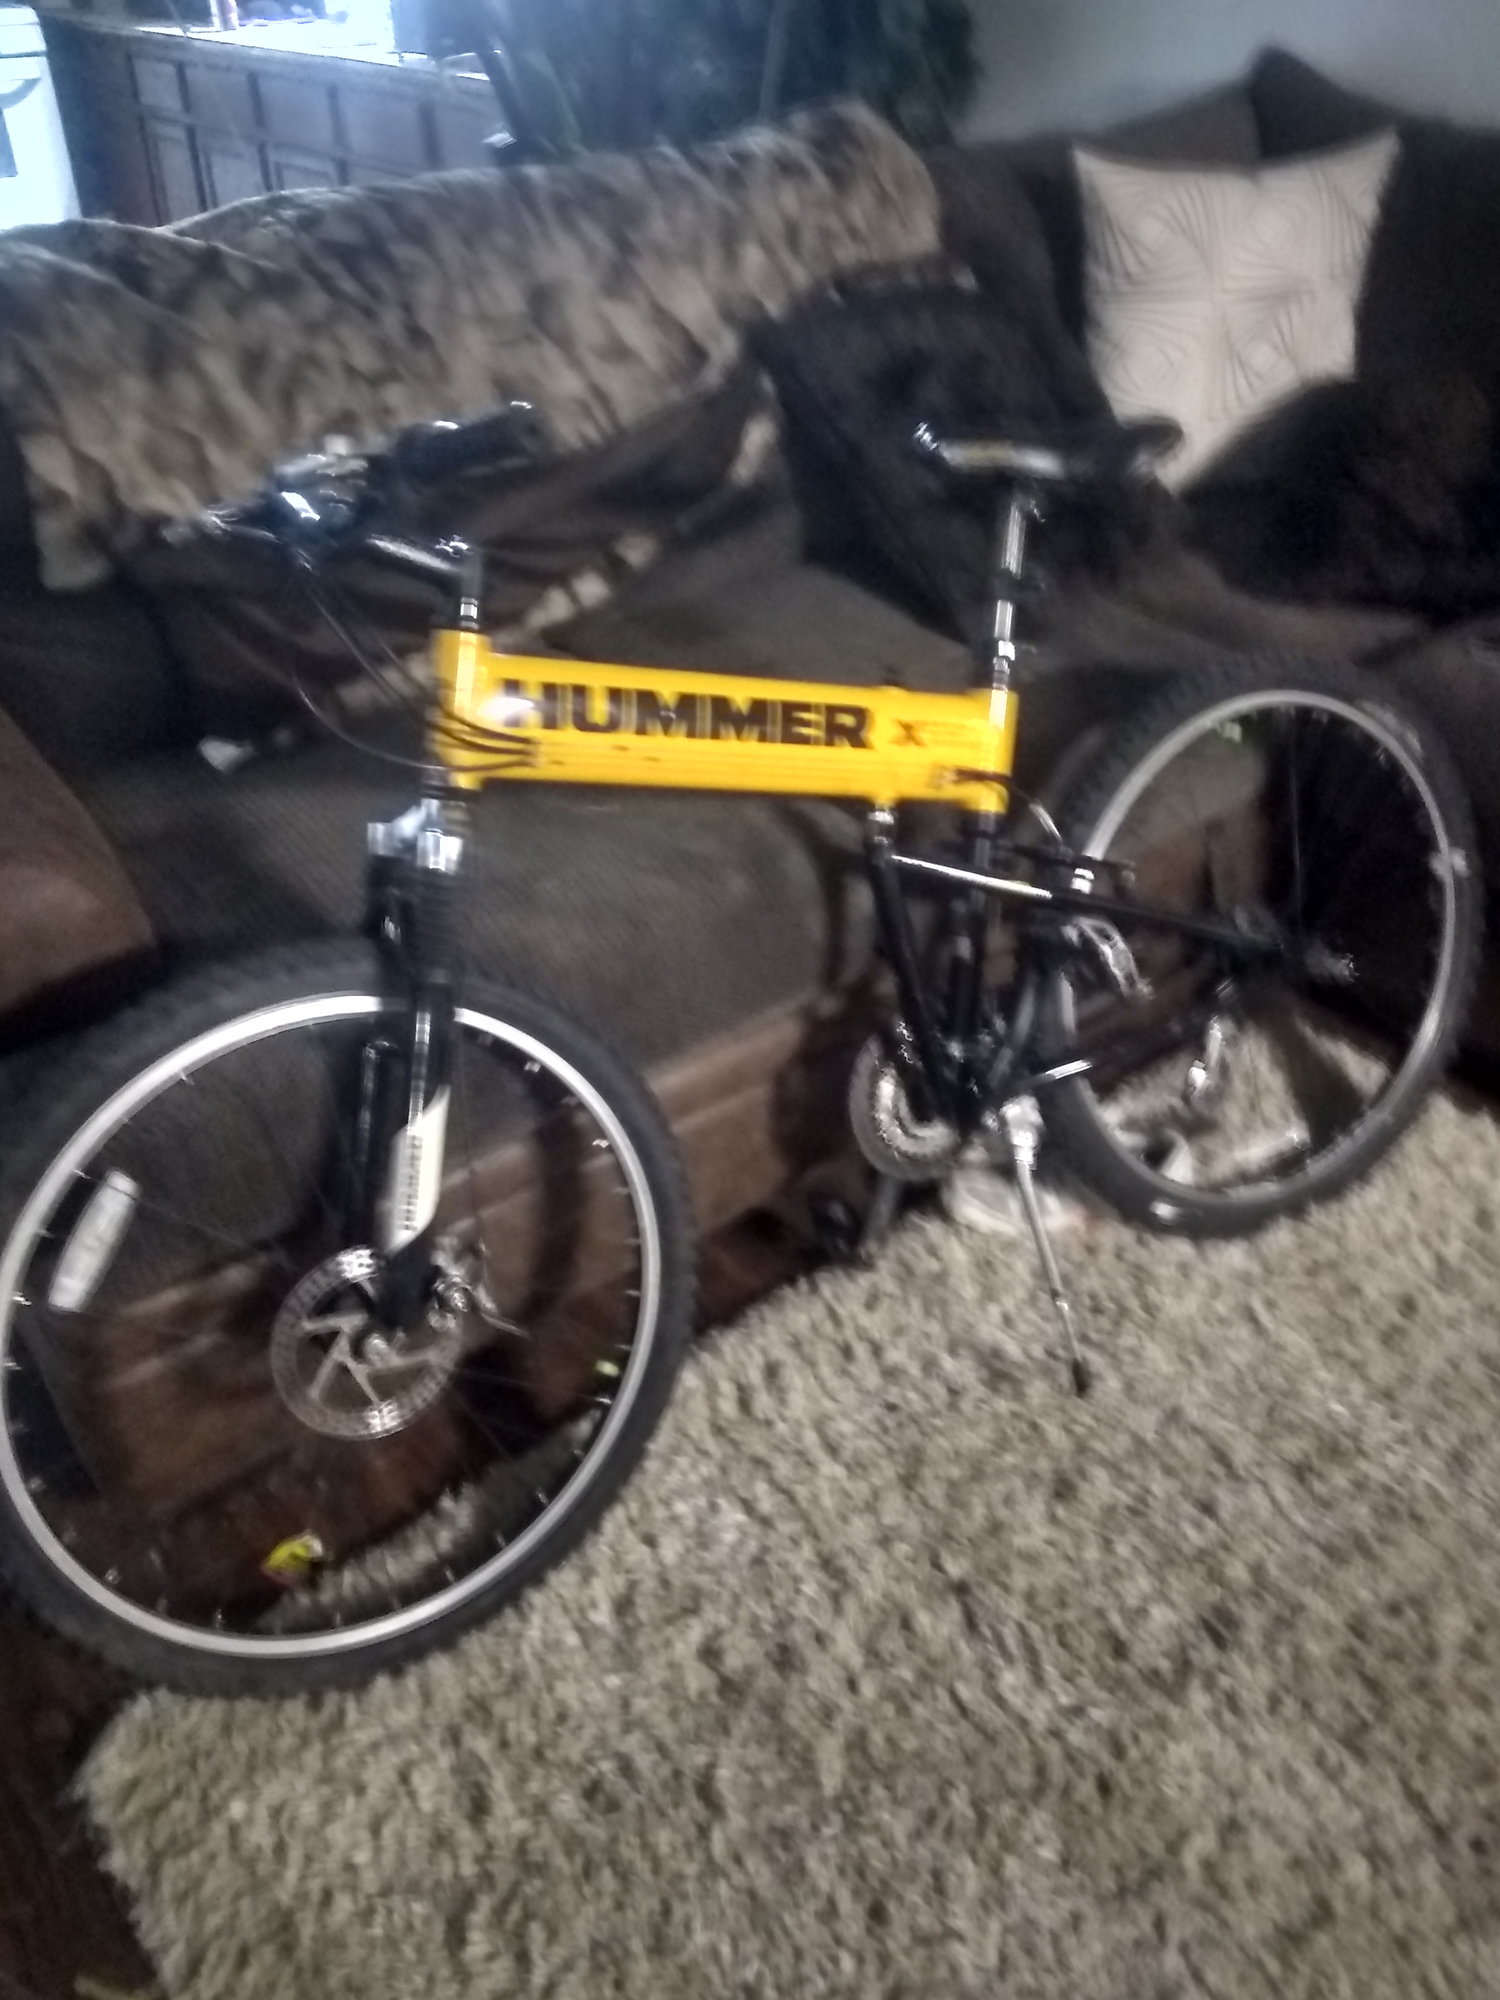 montague hummer bike for sale